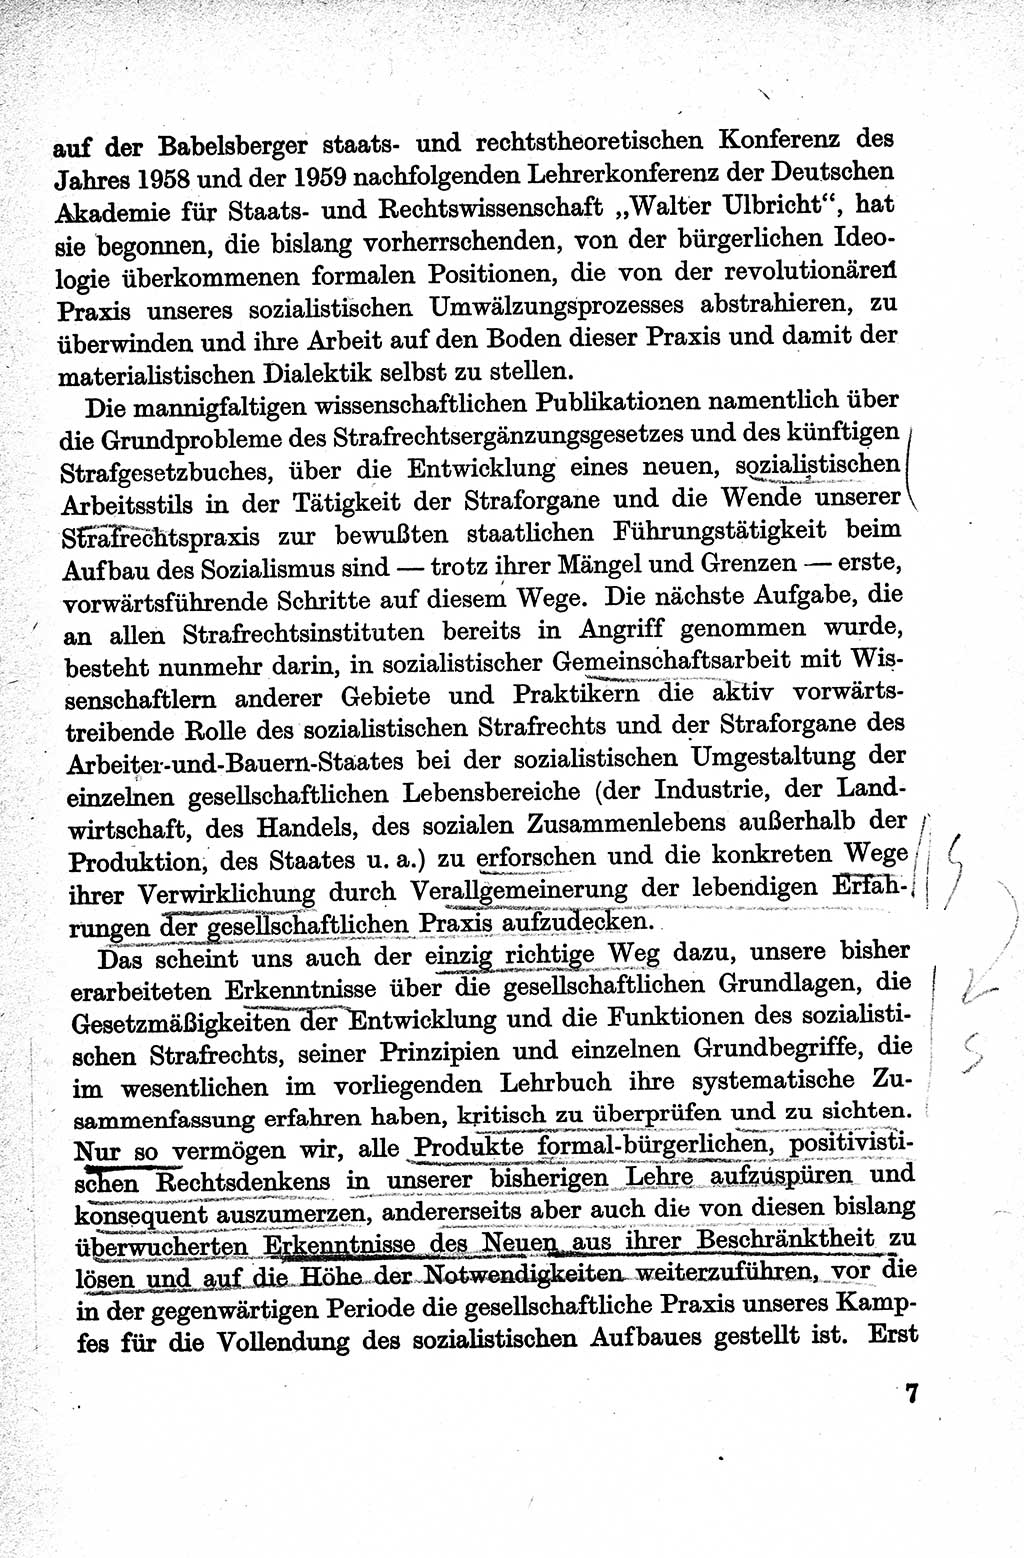 Lehrbuch des Strafrechts der Deutschen Demokratischen Republik (DDR), Allgemeiner Teil 1959, Seite 7 (Lb. Strafr. DDR AT 1959, S. 7)